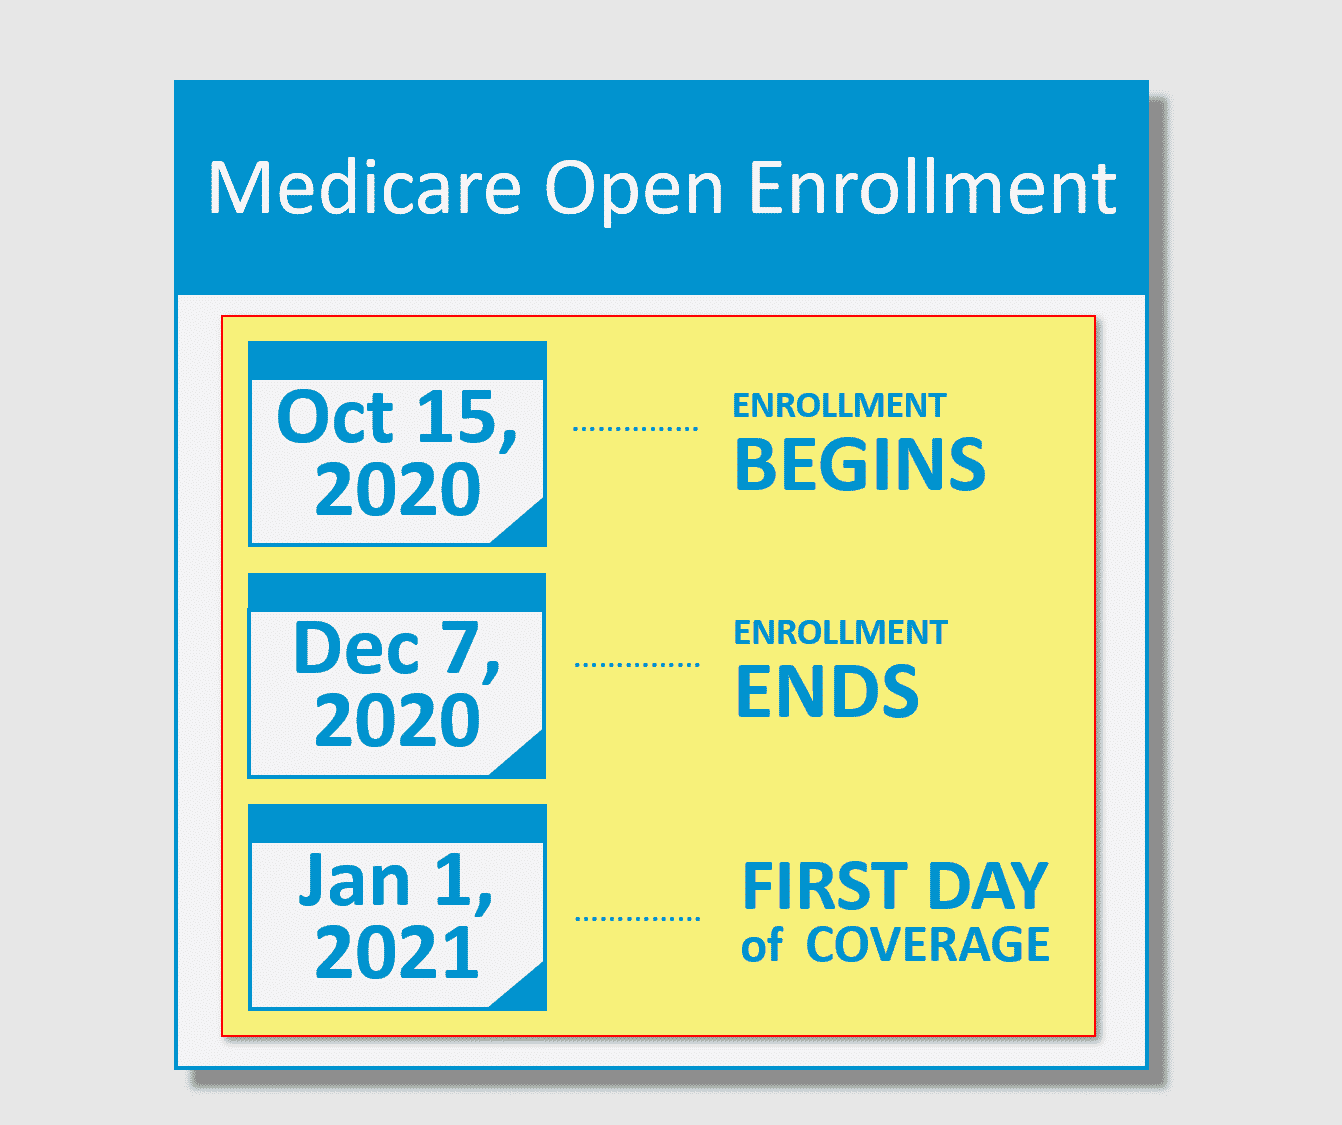 Medicare Open Enrollment begins October 15